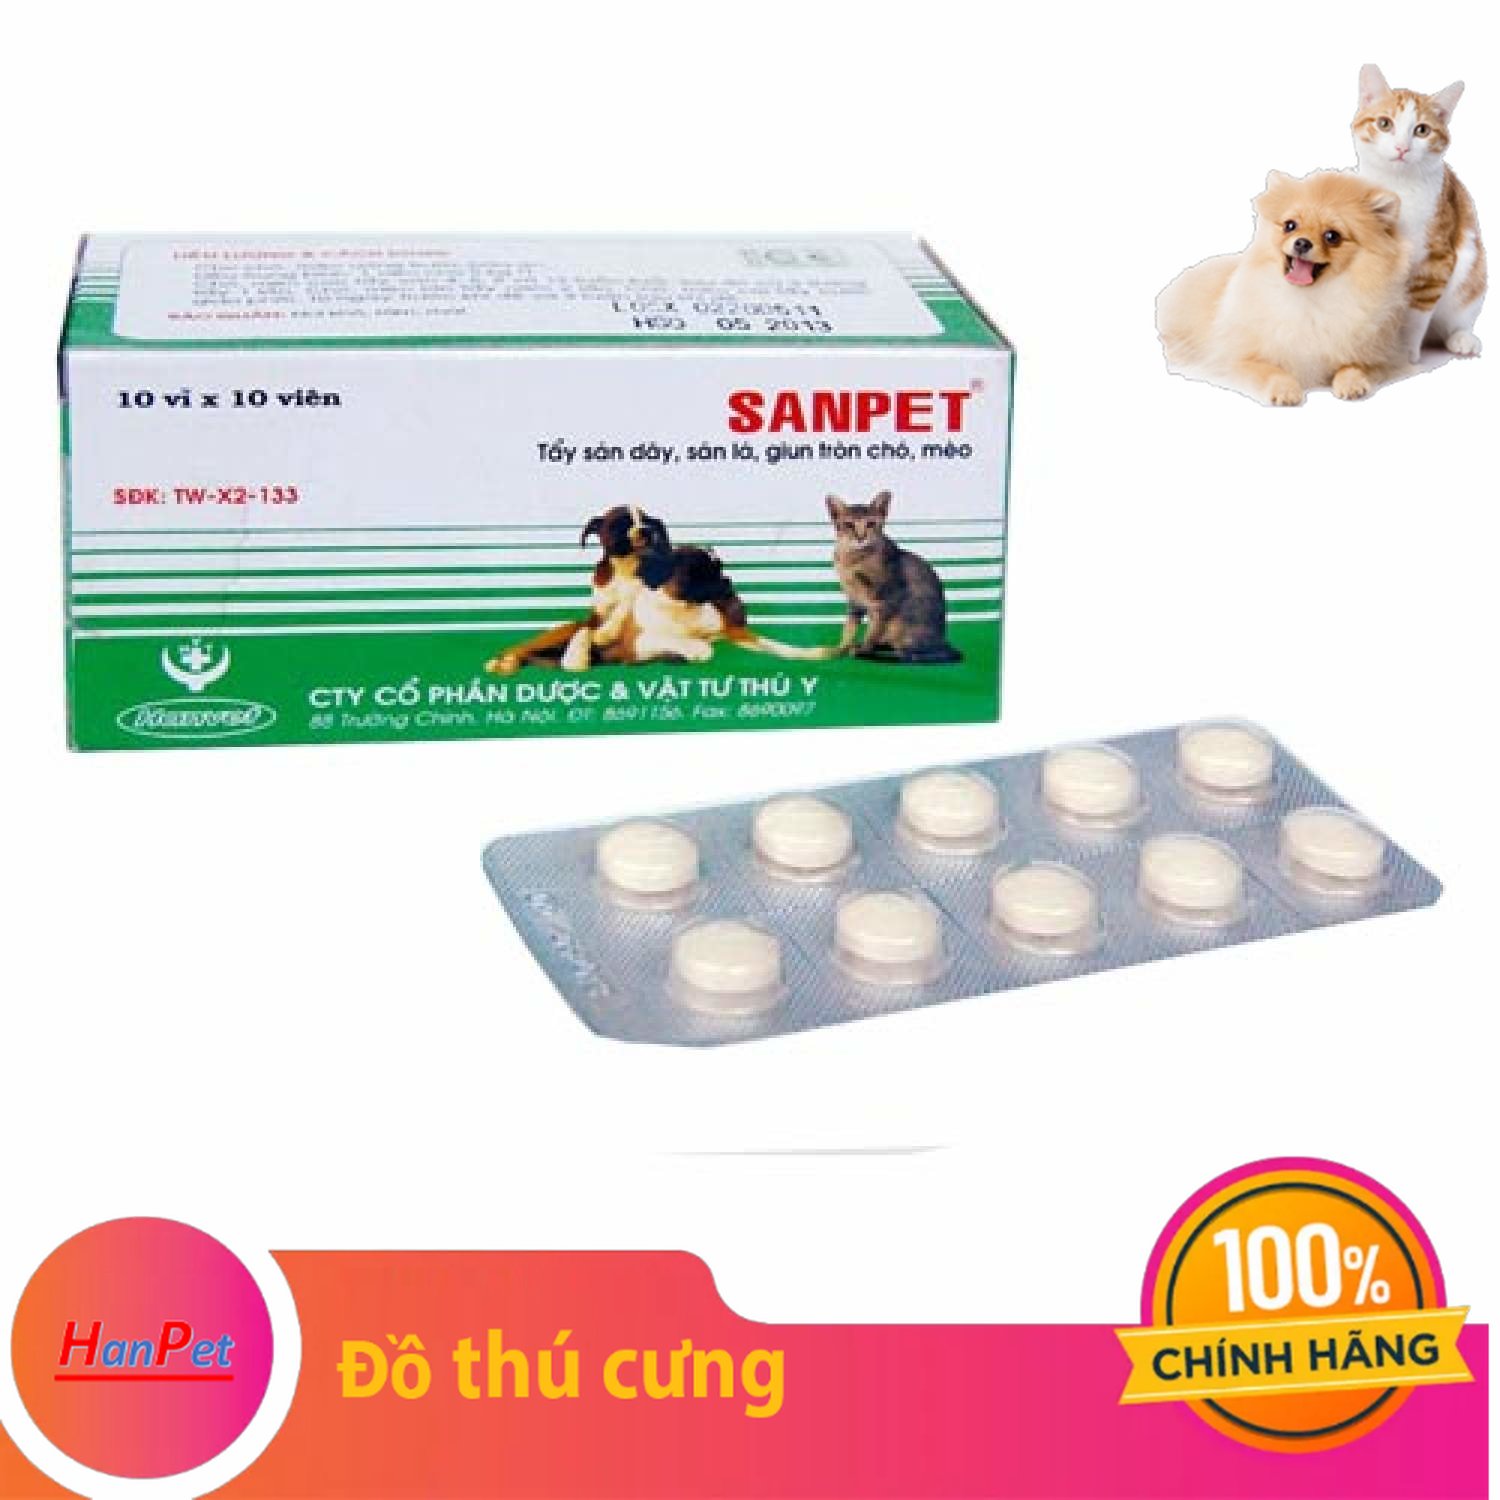 Hanpet - 1 Vỉ 10 viên XỔ GIUN SANPET - ( 303) tẩy giun chó / tẩy sán chó / tẩy giun chó mèo / xổ giun chó mèo / so lai cho /- HP10521TC